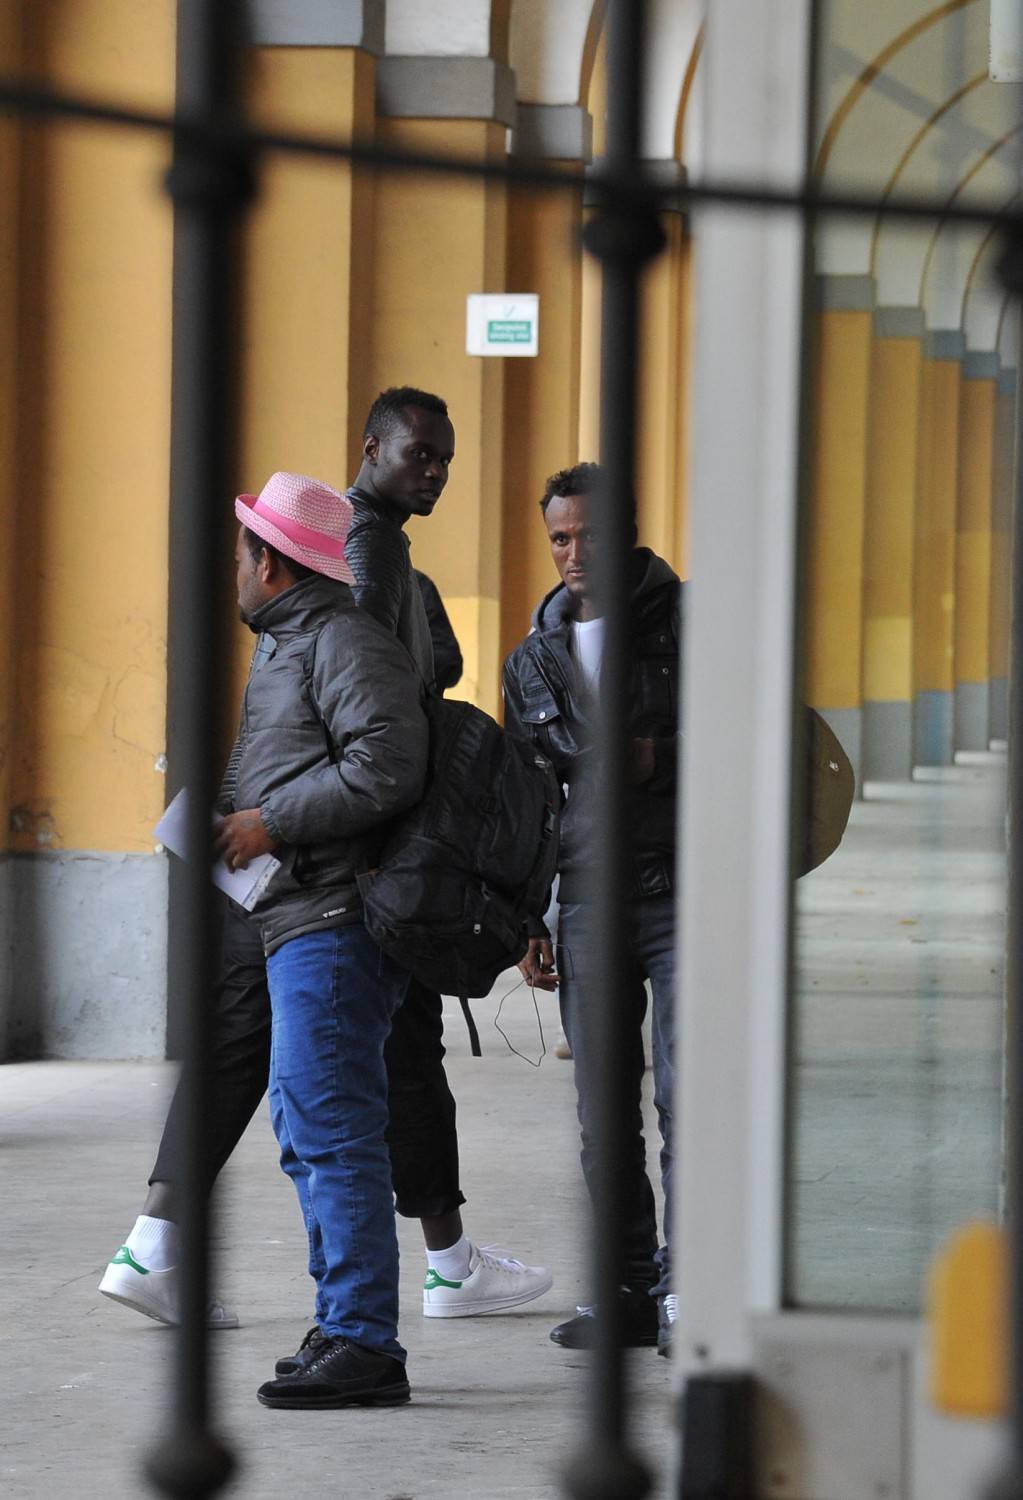 Nella caserma dei migranti non c'è posto per gli italiani